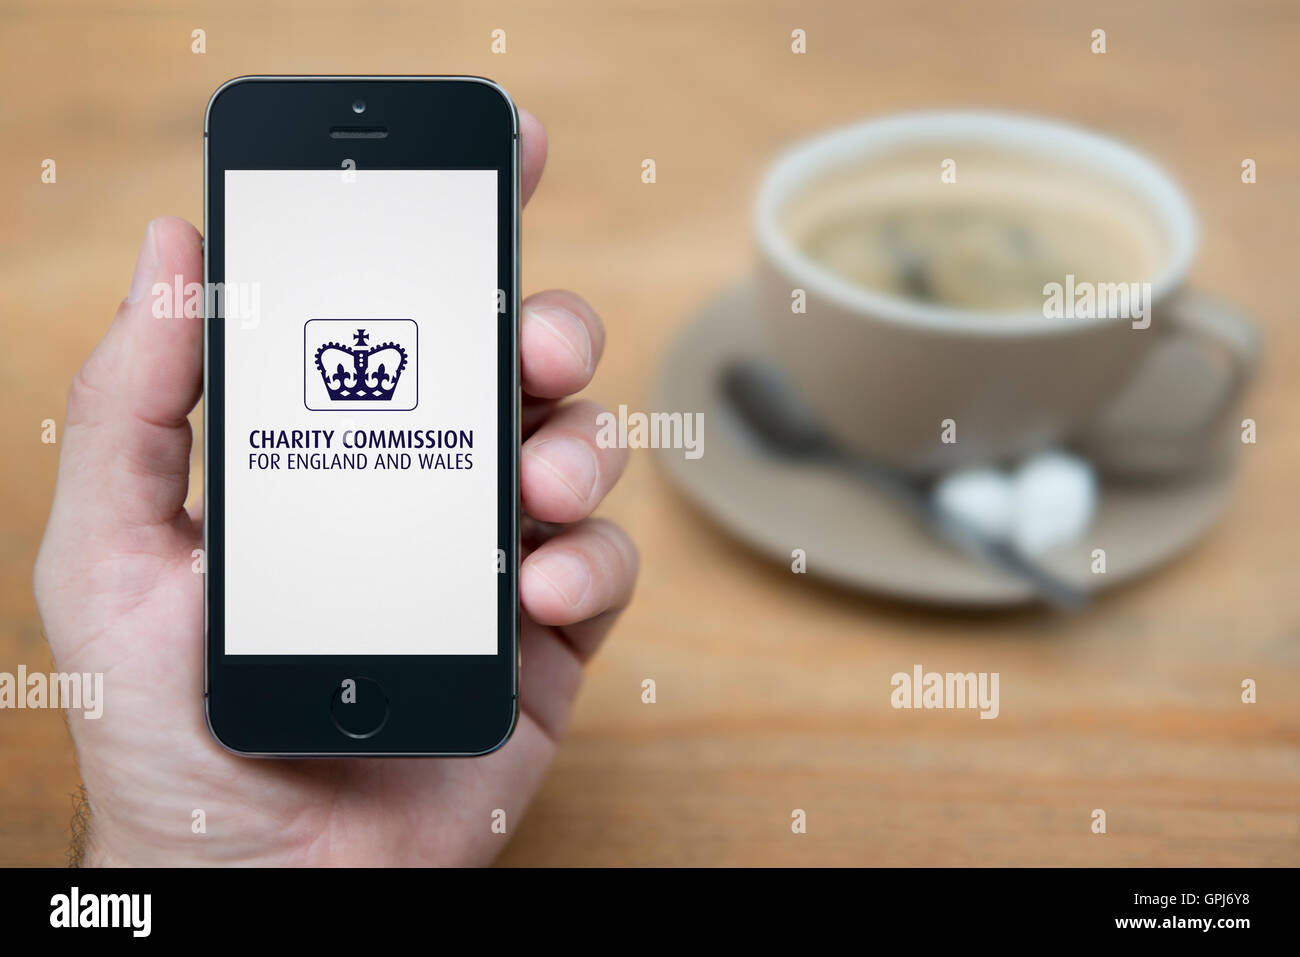 Un homme se penche sur son iPhone qui affiche le logo de la Commission de bienfaisance du gouvernement britannique, avec le café (usage éditorial uniquement). Banque D'Images